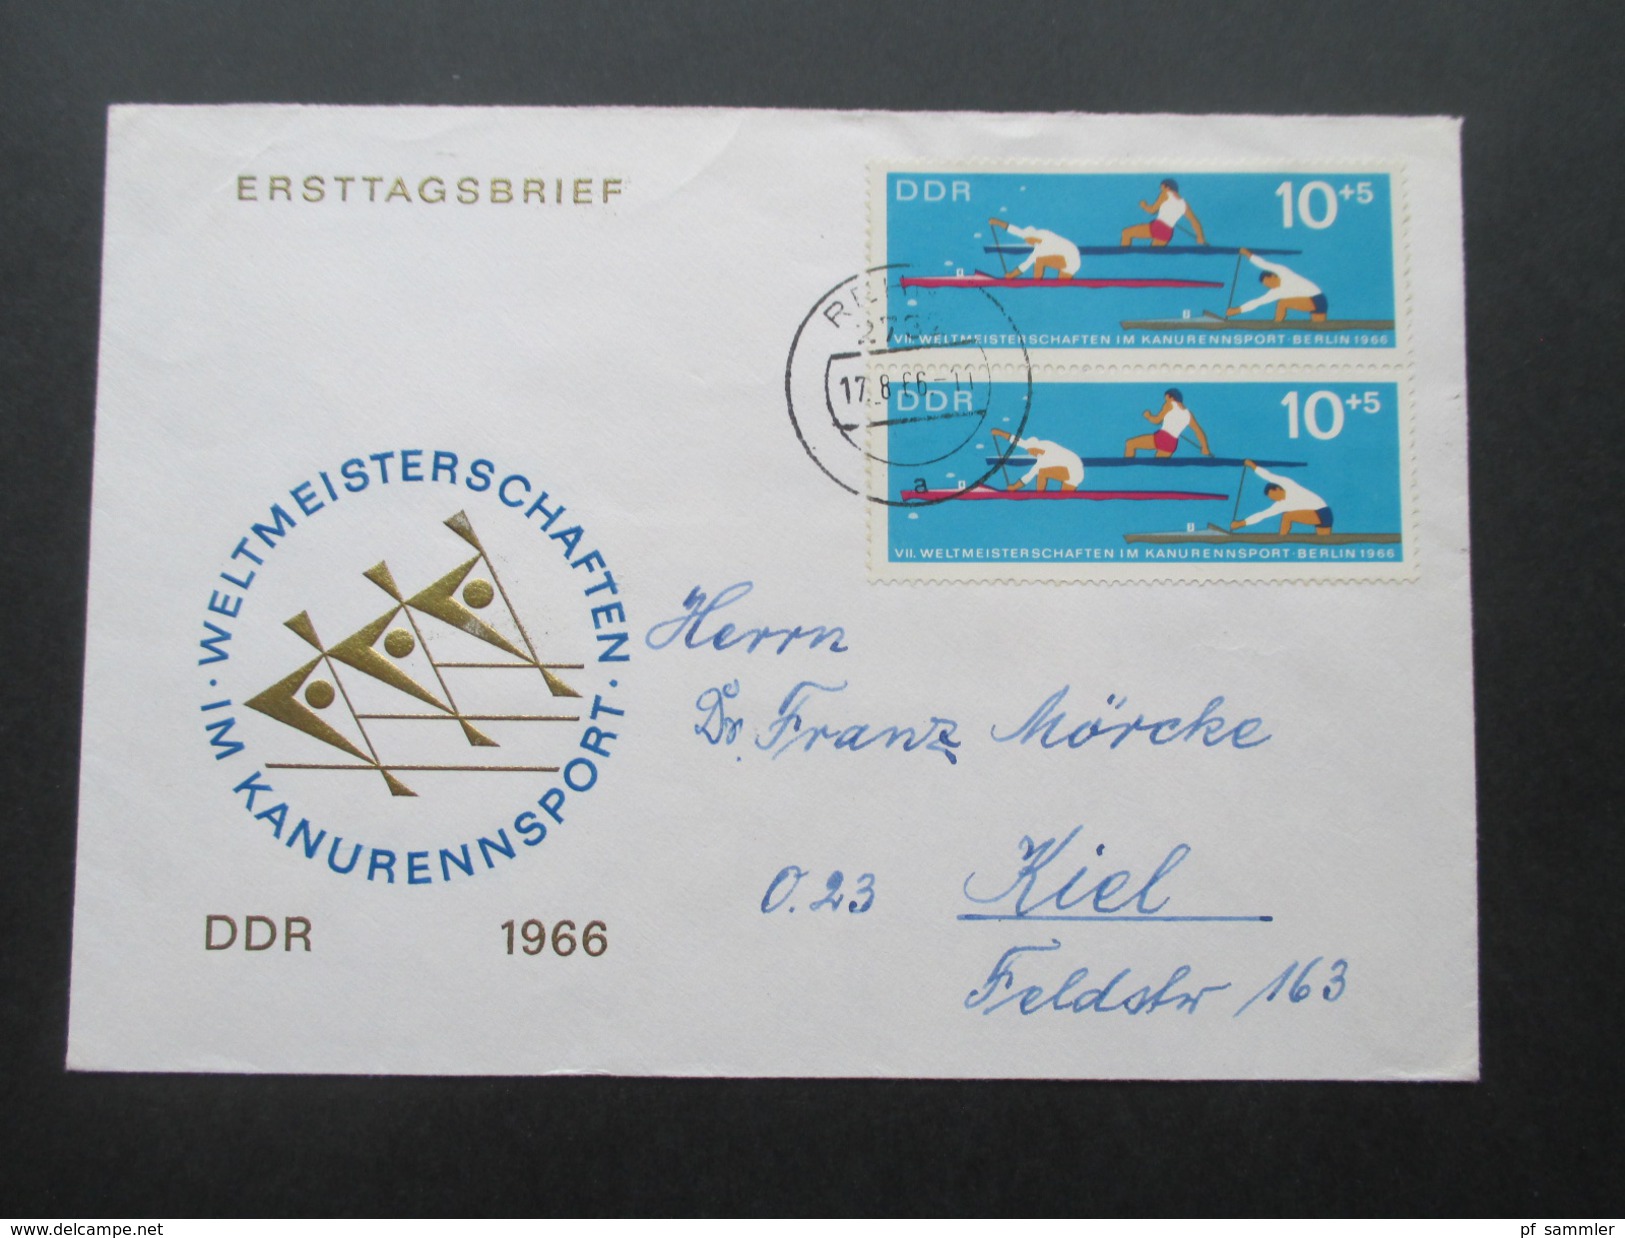 DDR Belegeposten 1958 - 1976 FDC / Einschreiben / Satzbriefe / Blocks / ZD usw. 100 Belege! Stöberposten / Fundgrube?!